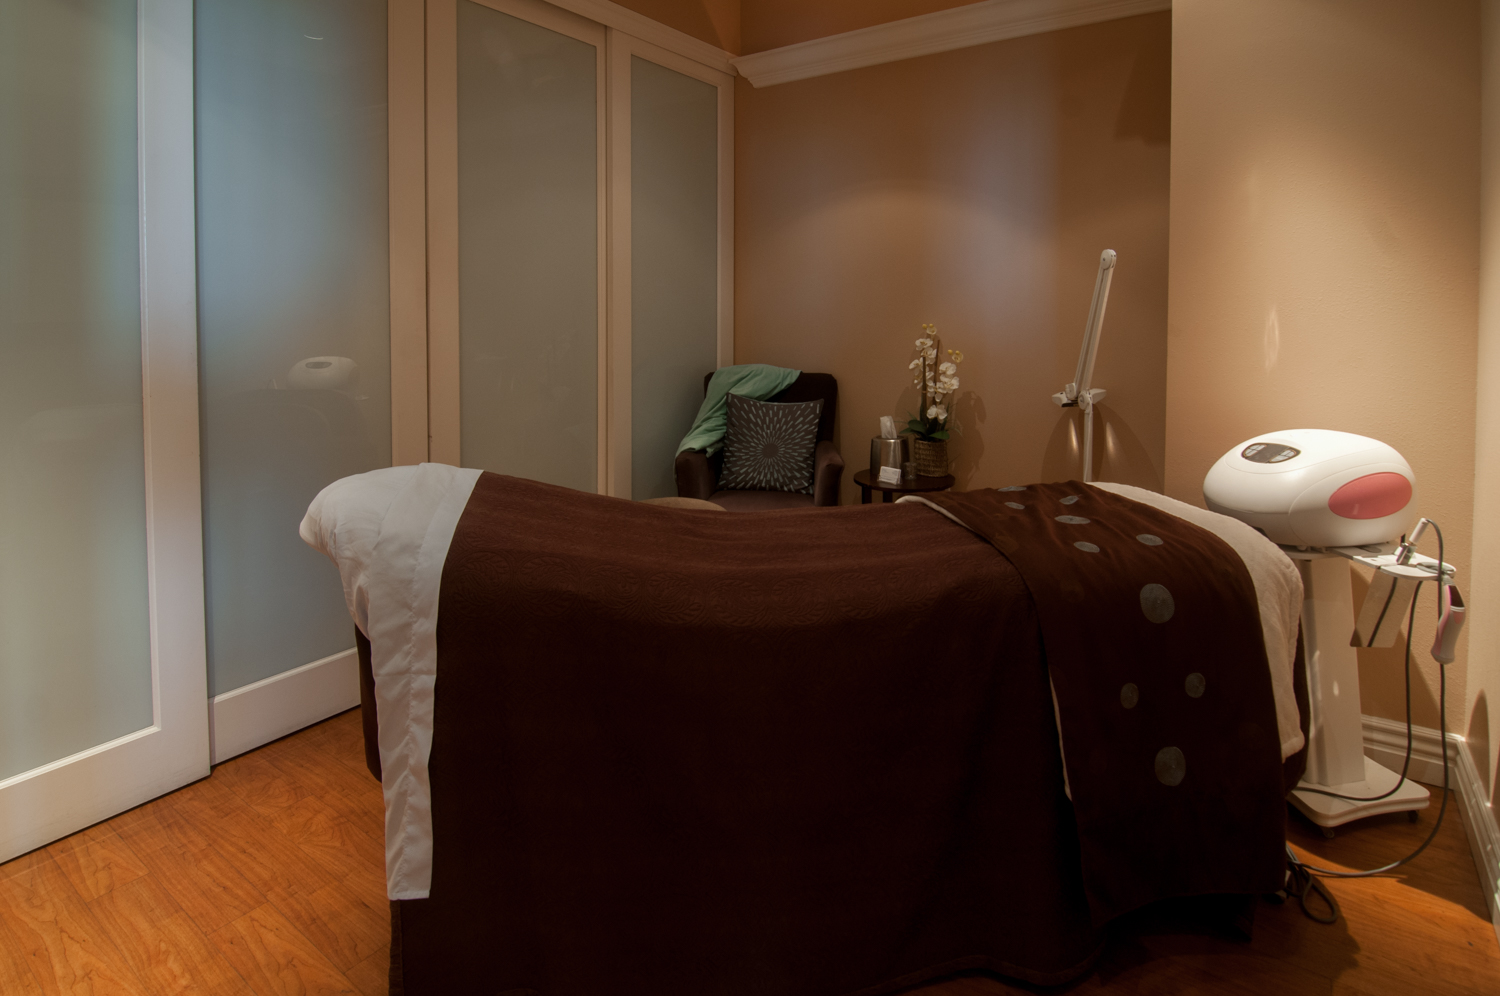 Massage Room Bed Spago Day Spa Medispa Salon Punta Gorda Florida Michael Stampar D.O. DO